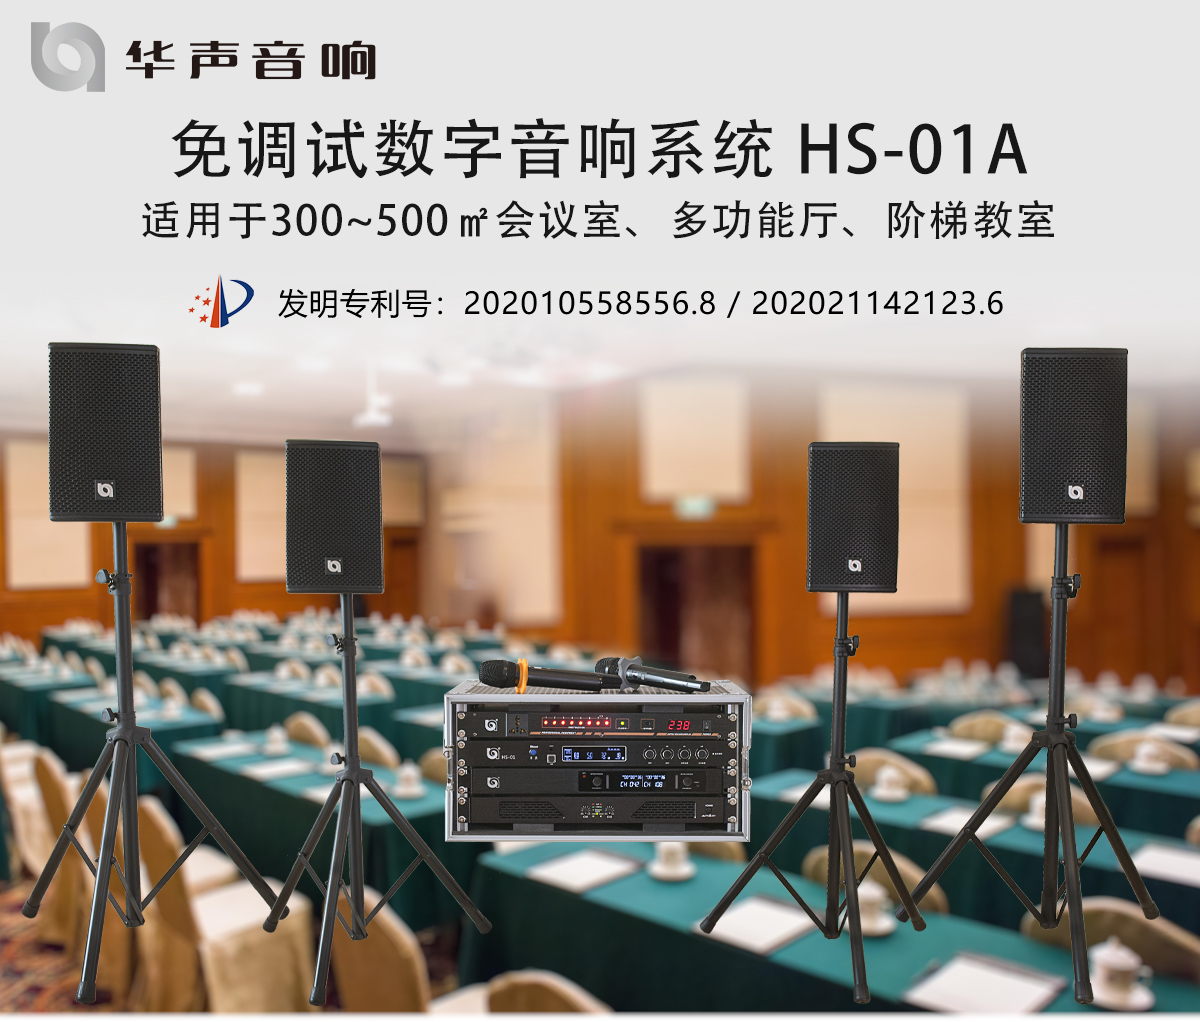 HS-01A 免调试数字音响系统(图1)